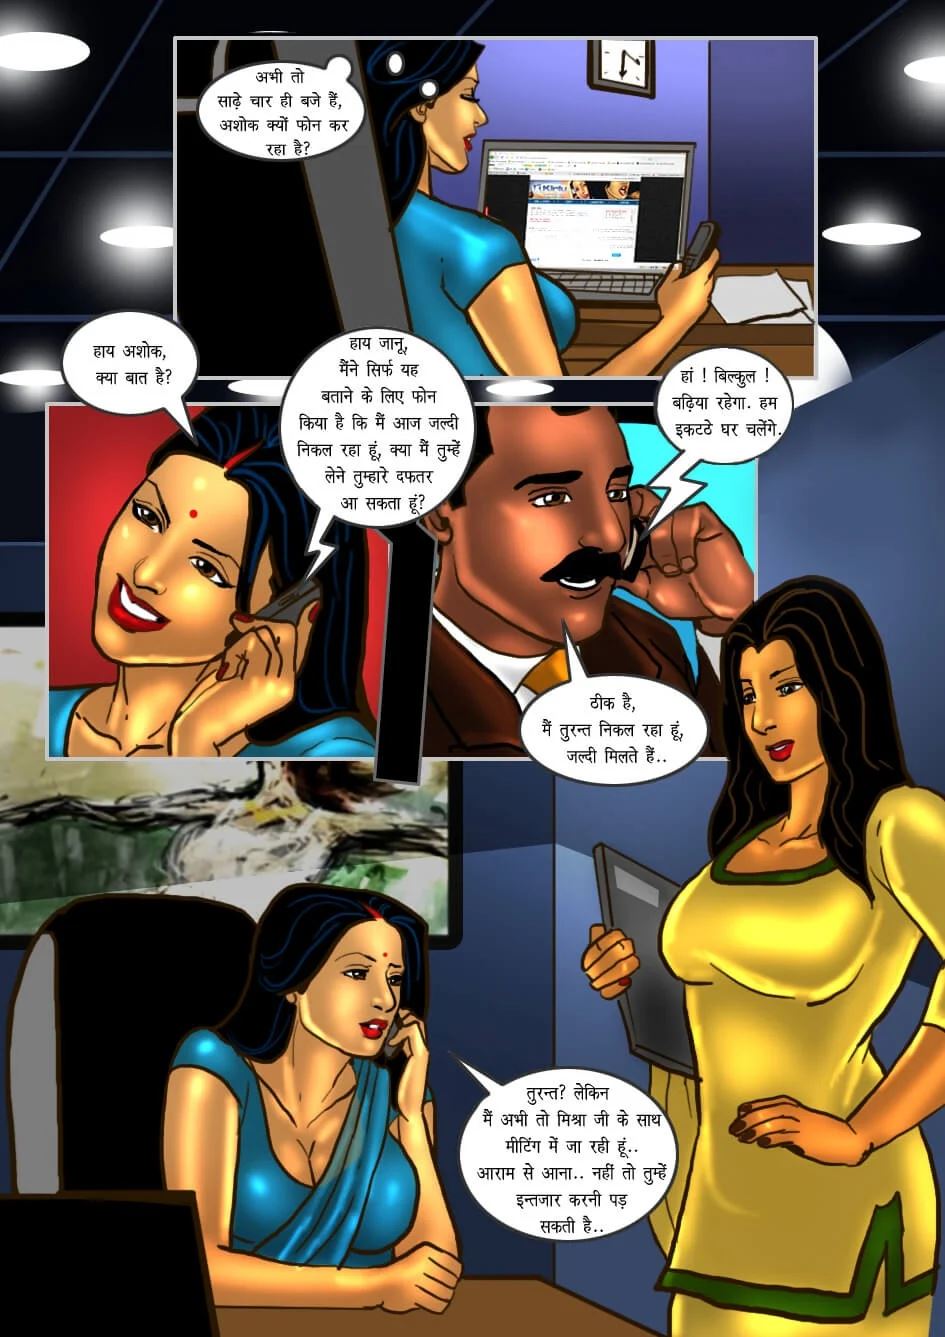 Hindi Mai Savita Bhabhi Ki Chudai Cartoon - Savita Bhabhi [Hindi] Porn Comics by [Kirtu] (Porn Comic) Rule 34 Comics â€“  R34Porn